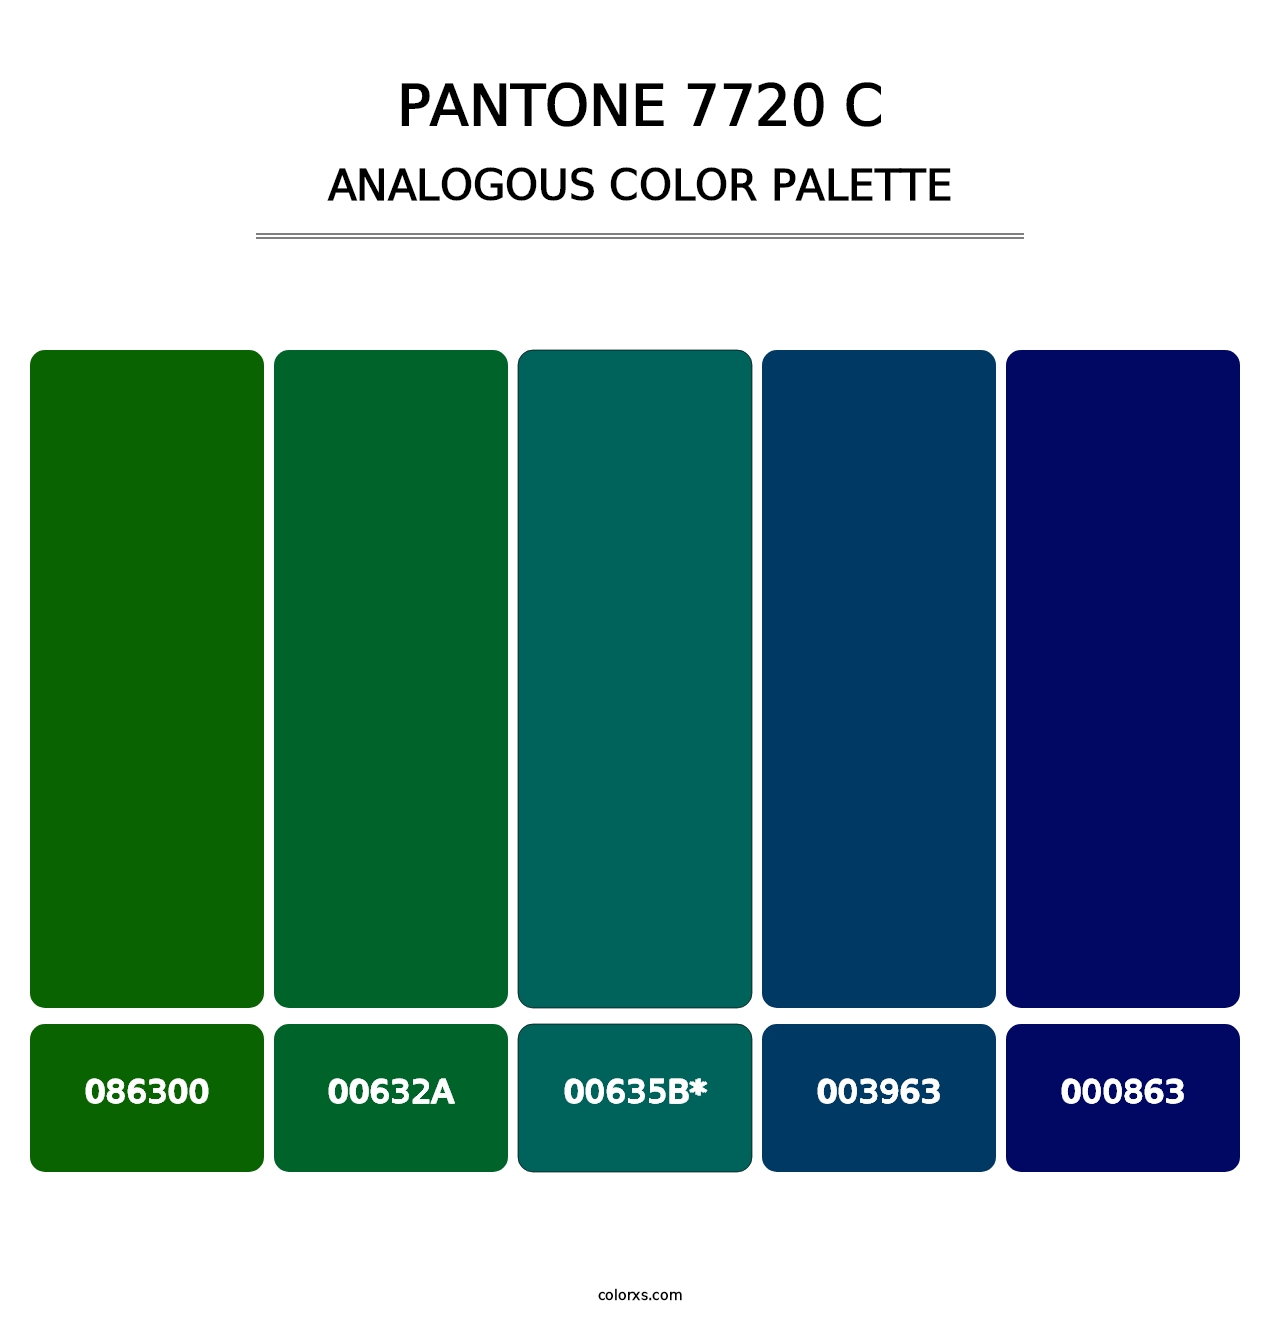 PANTONE 7720 C - Analogous Color Palette